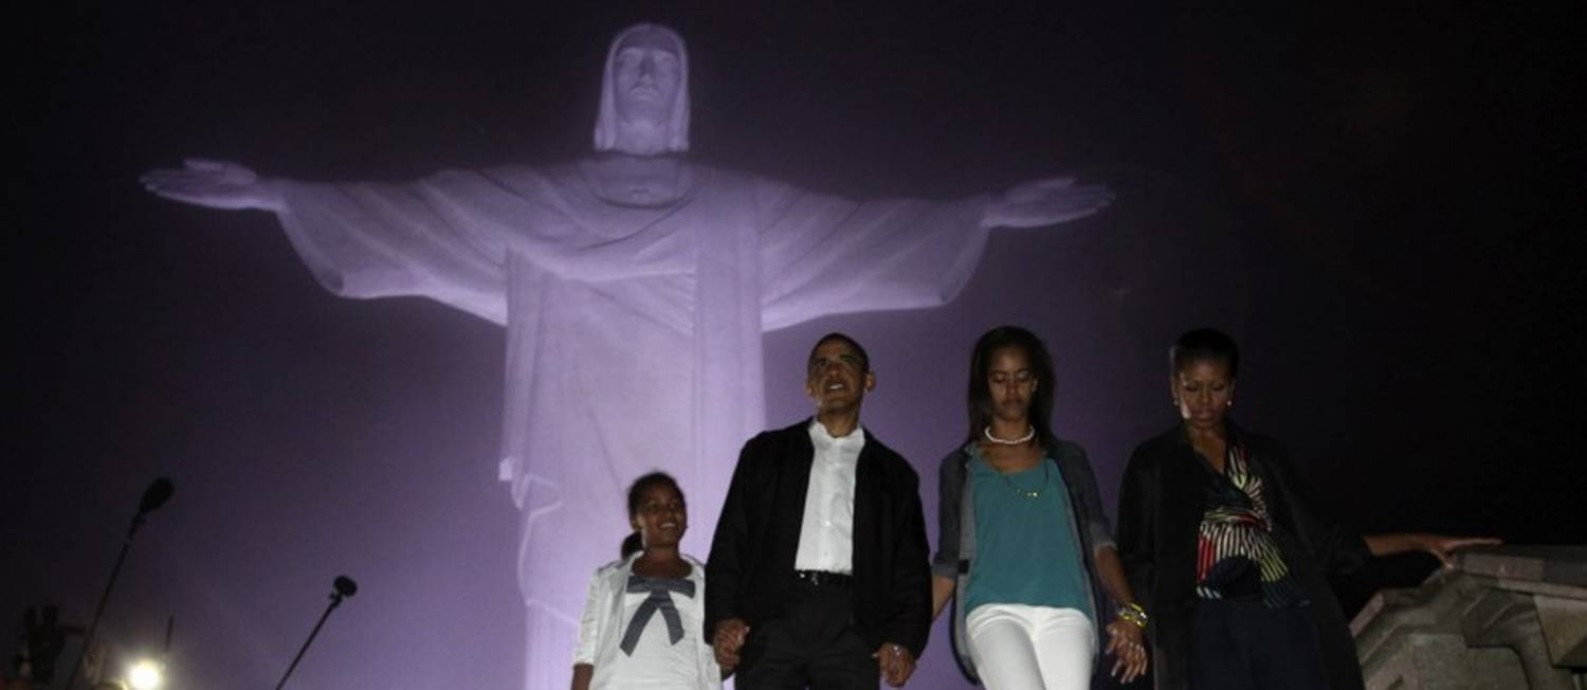 O então presidente dos Estados Unidos Barack Obama, a primeira-dama Michelle Obama e as suas filhas Sasha (e) e Malia no Cristo Redentor em viagem ao Rio de Janeiro em março de 2011 Foto: JASON REED / Reuters 20-3-11